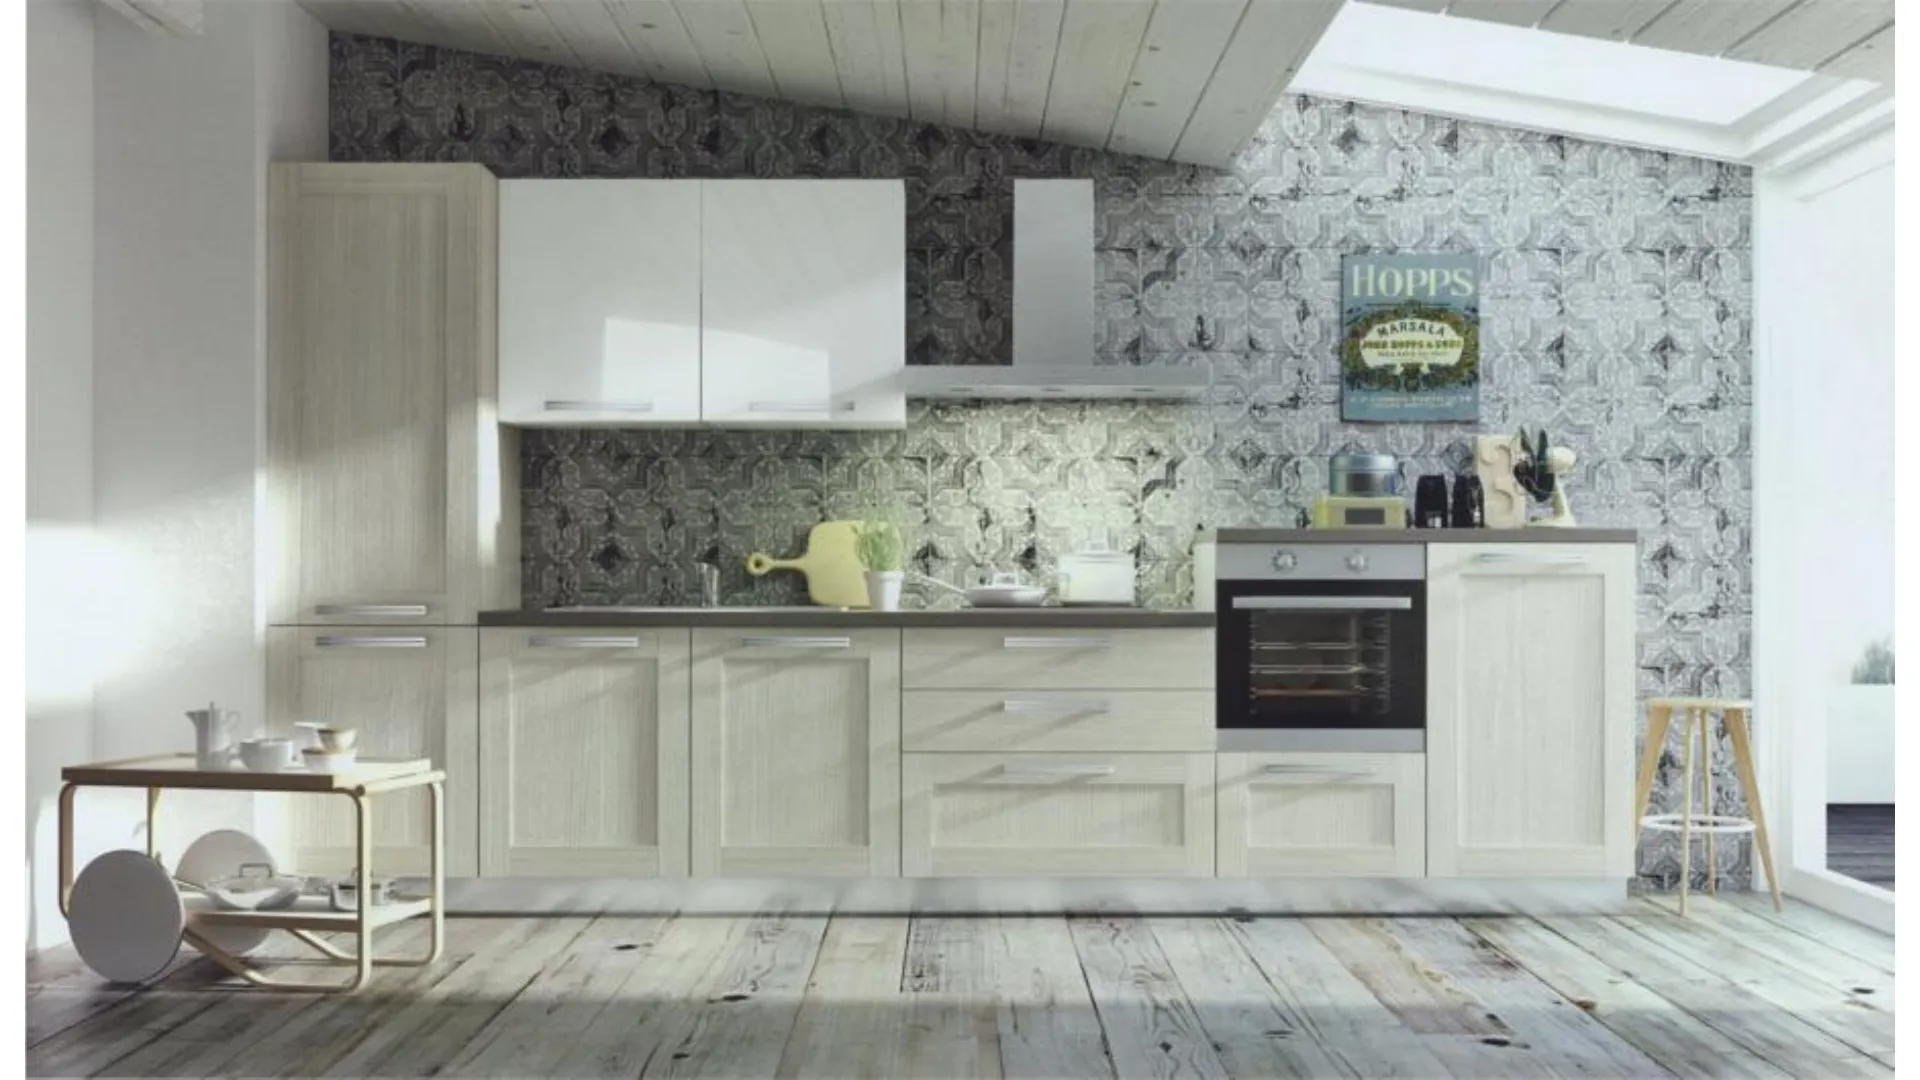 Cloe model modern kitchen with framed door in provencian oak finish.